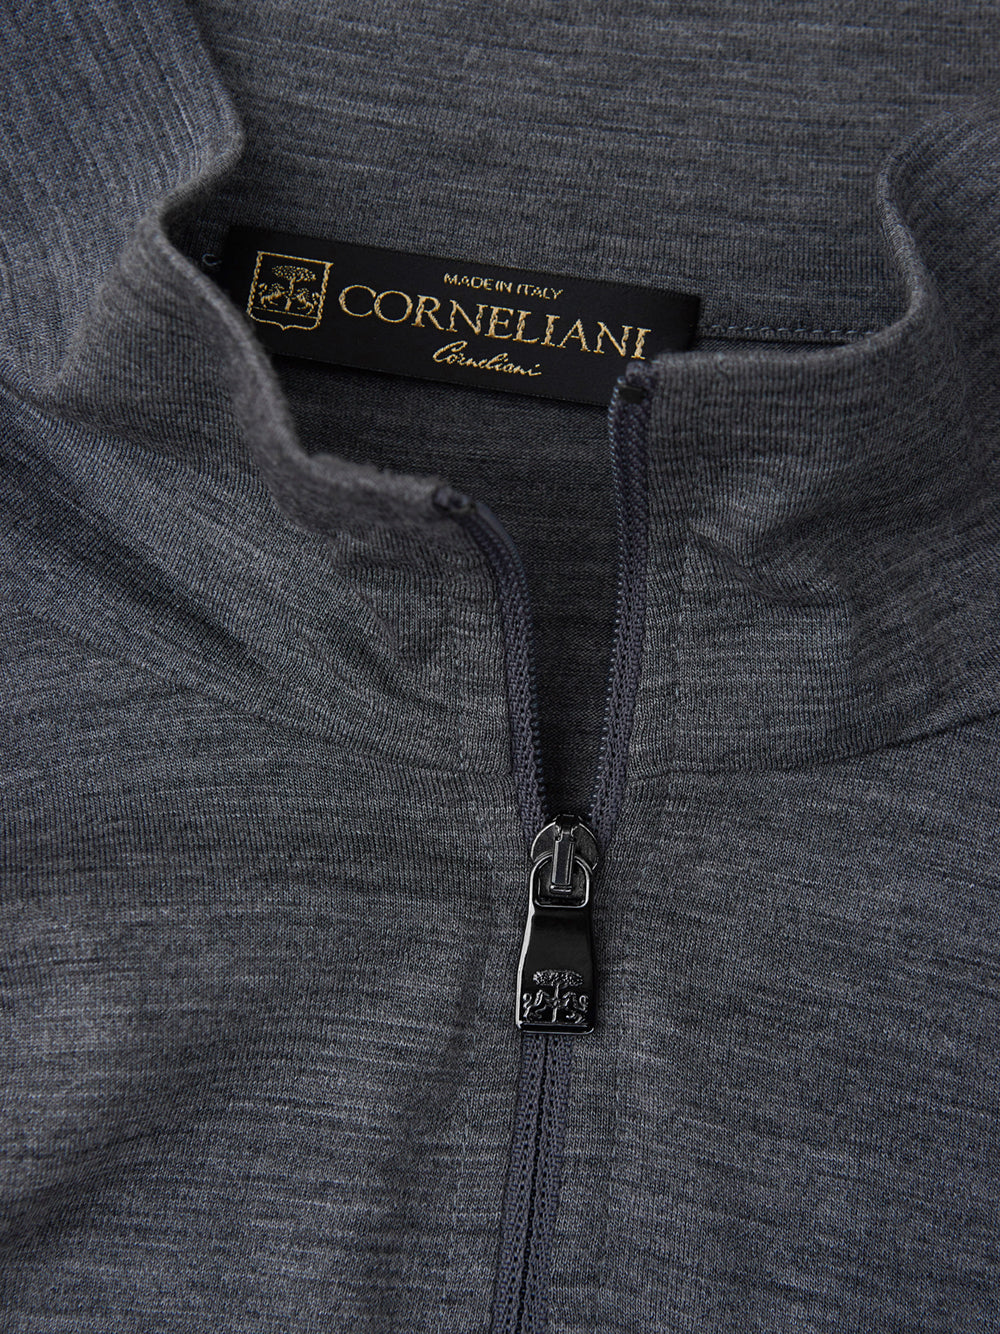 Corneliani Wool Turtleneck with Half Zip